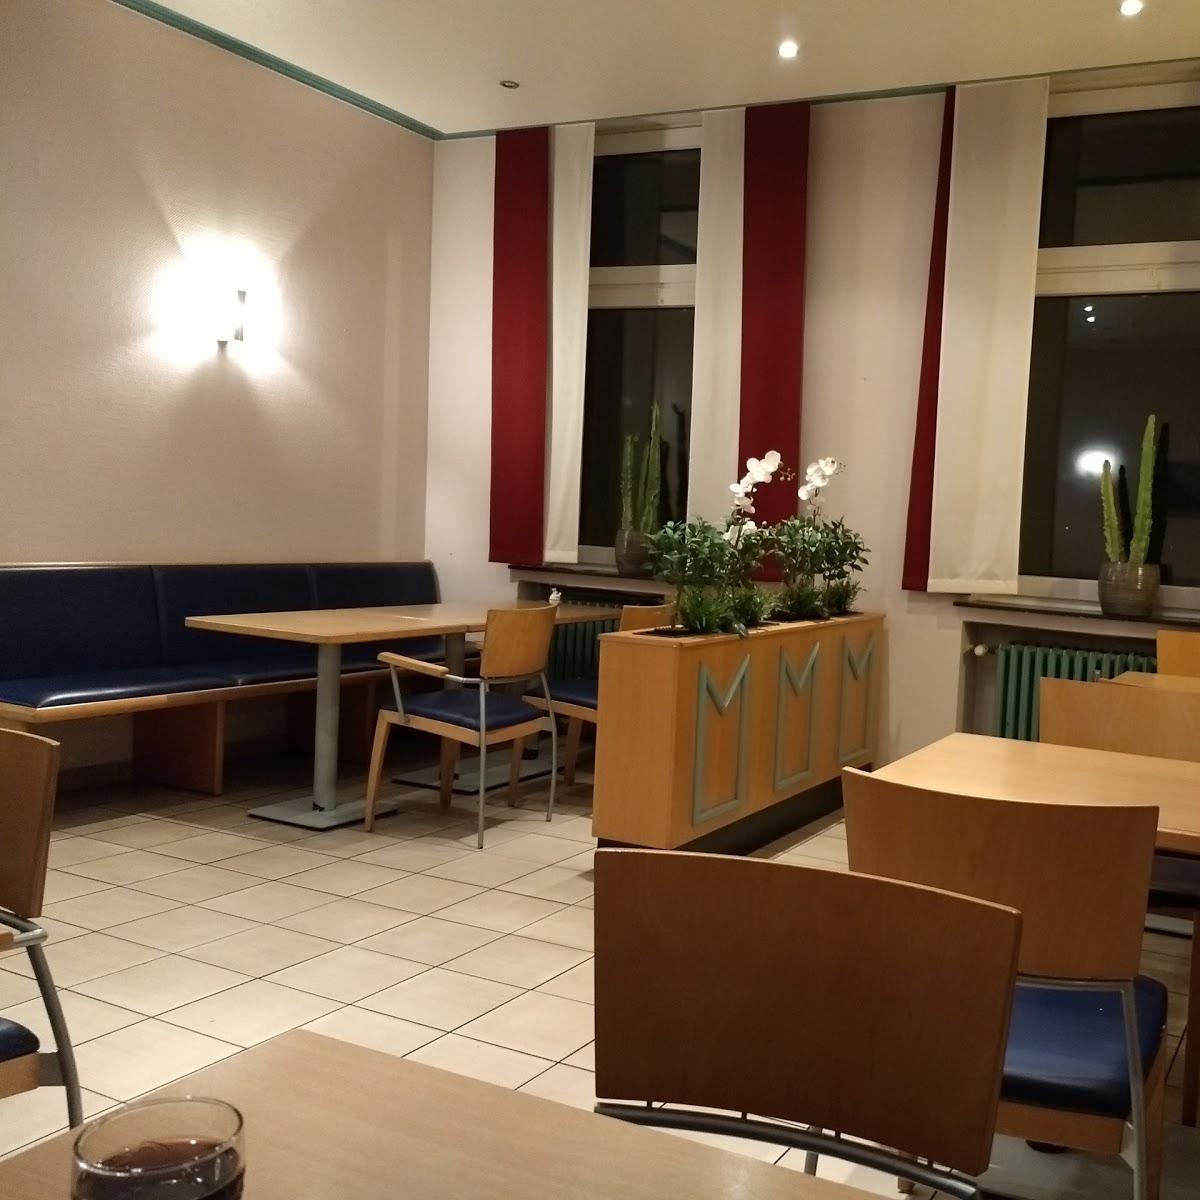 Restaurant "Bentlager Grill" in Rheine